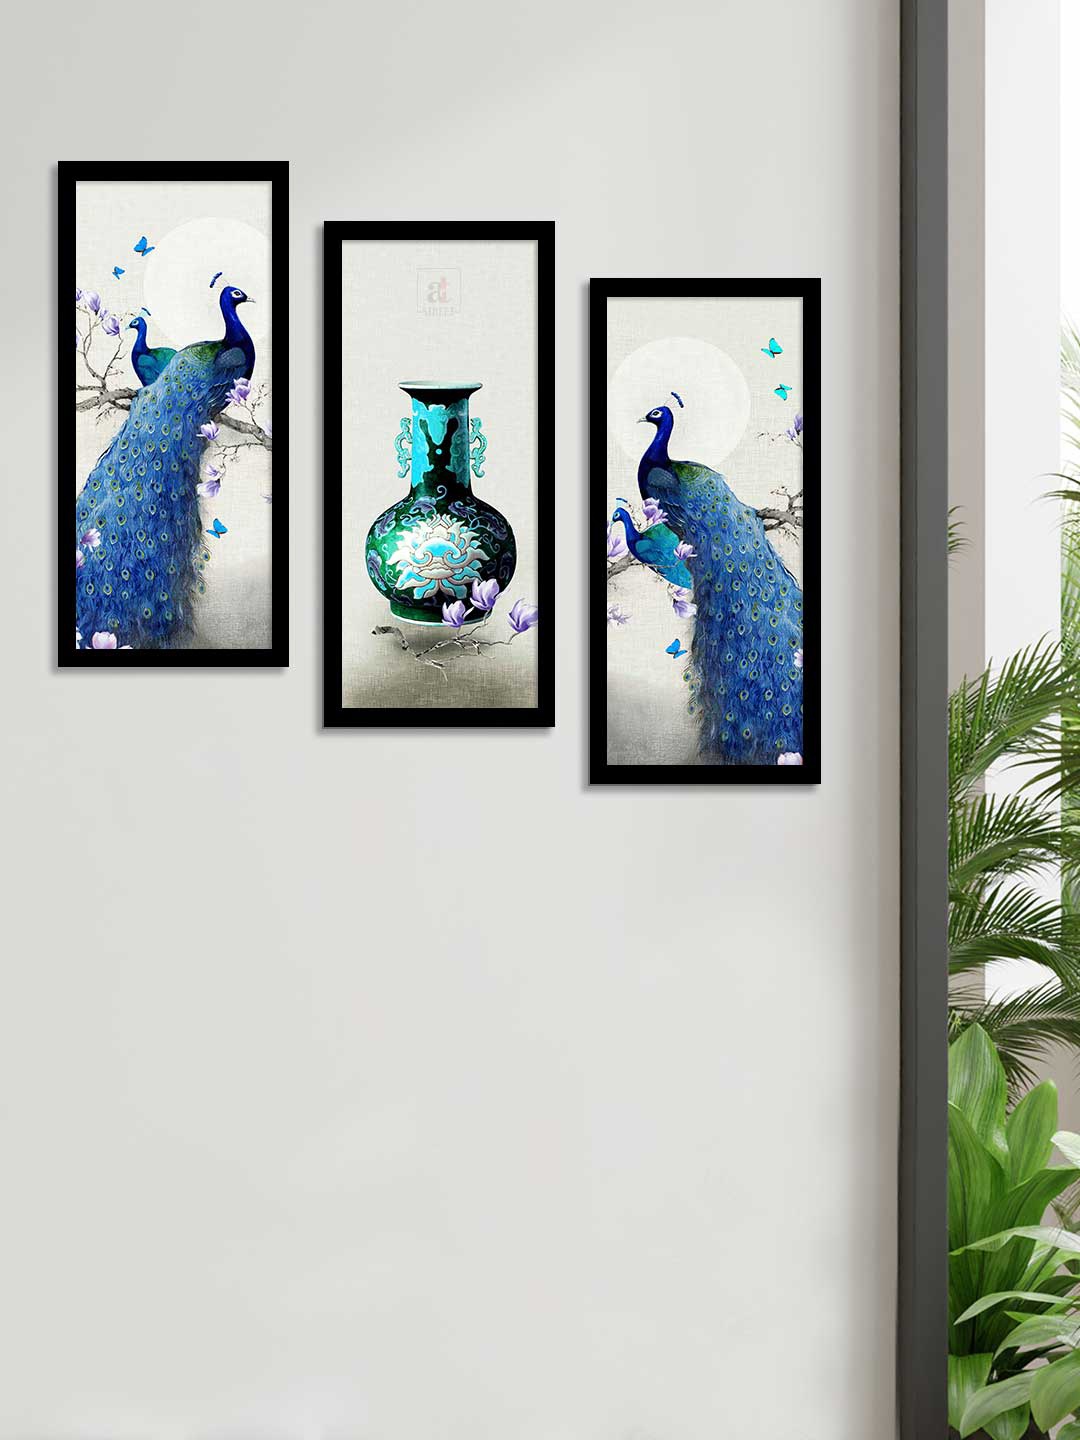 

Art Street Set Of 3 Blue & White Peacock Theme Framed Paintings